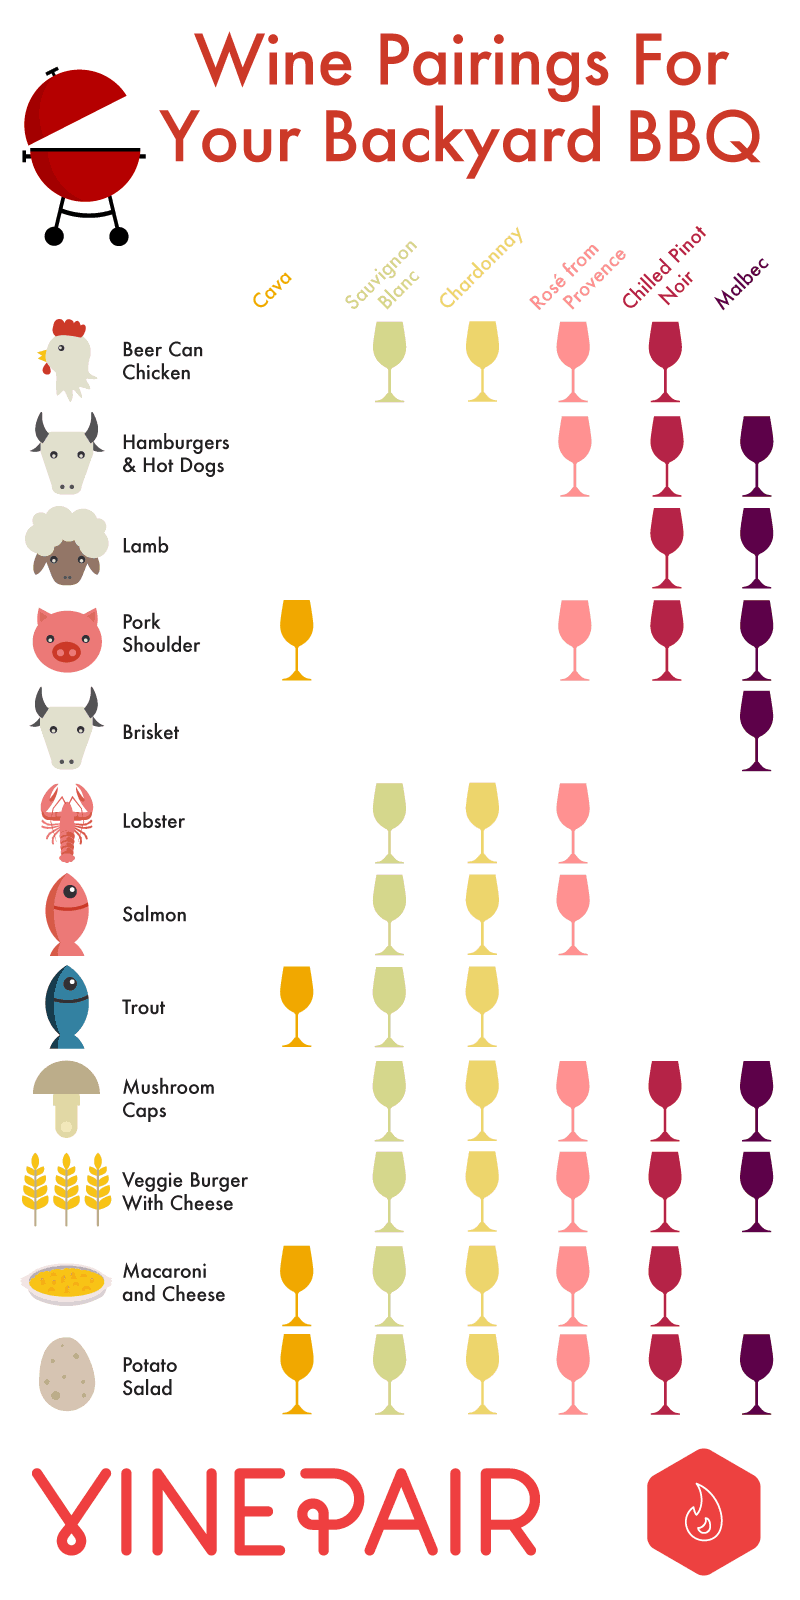 bbq wine pairing chart